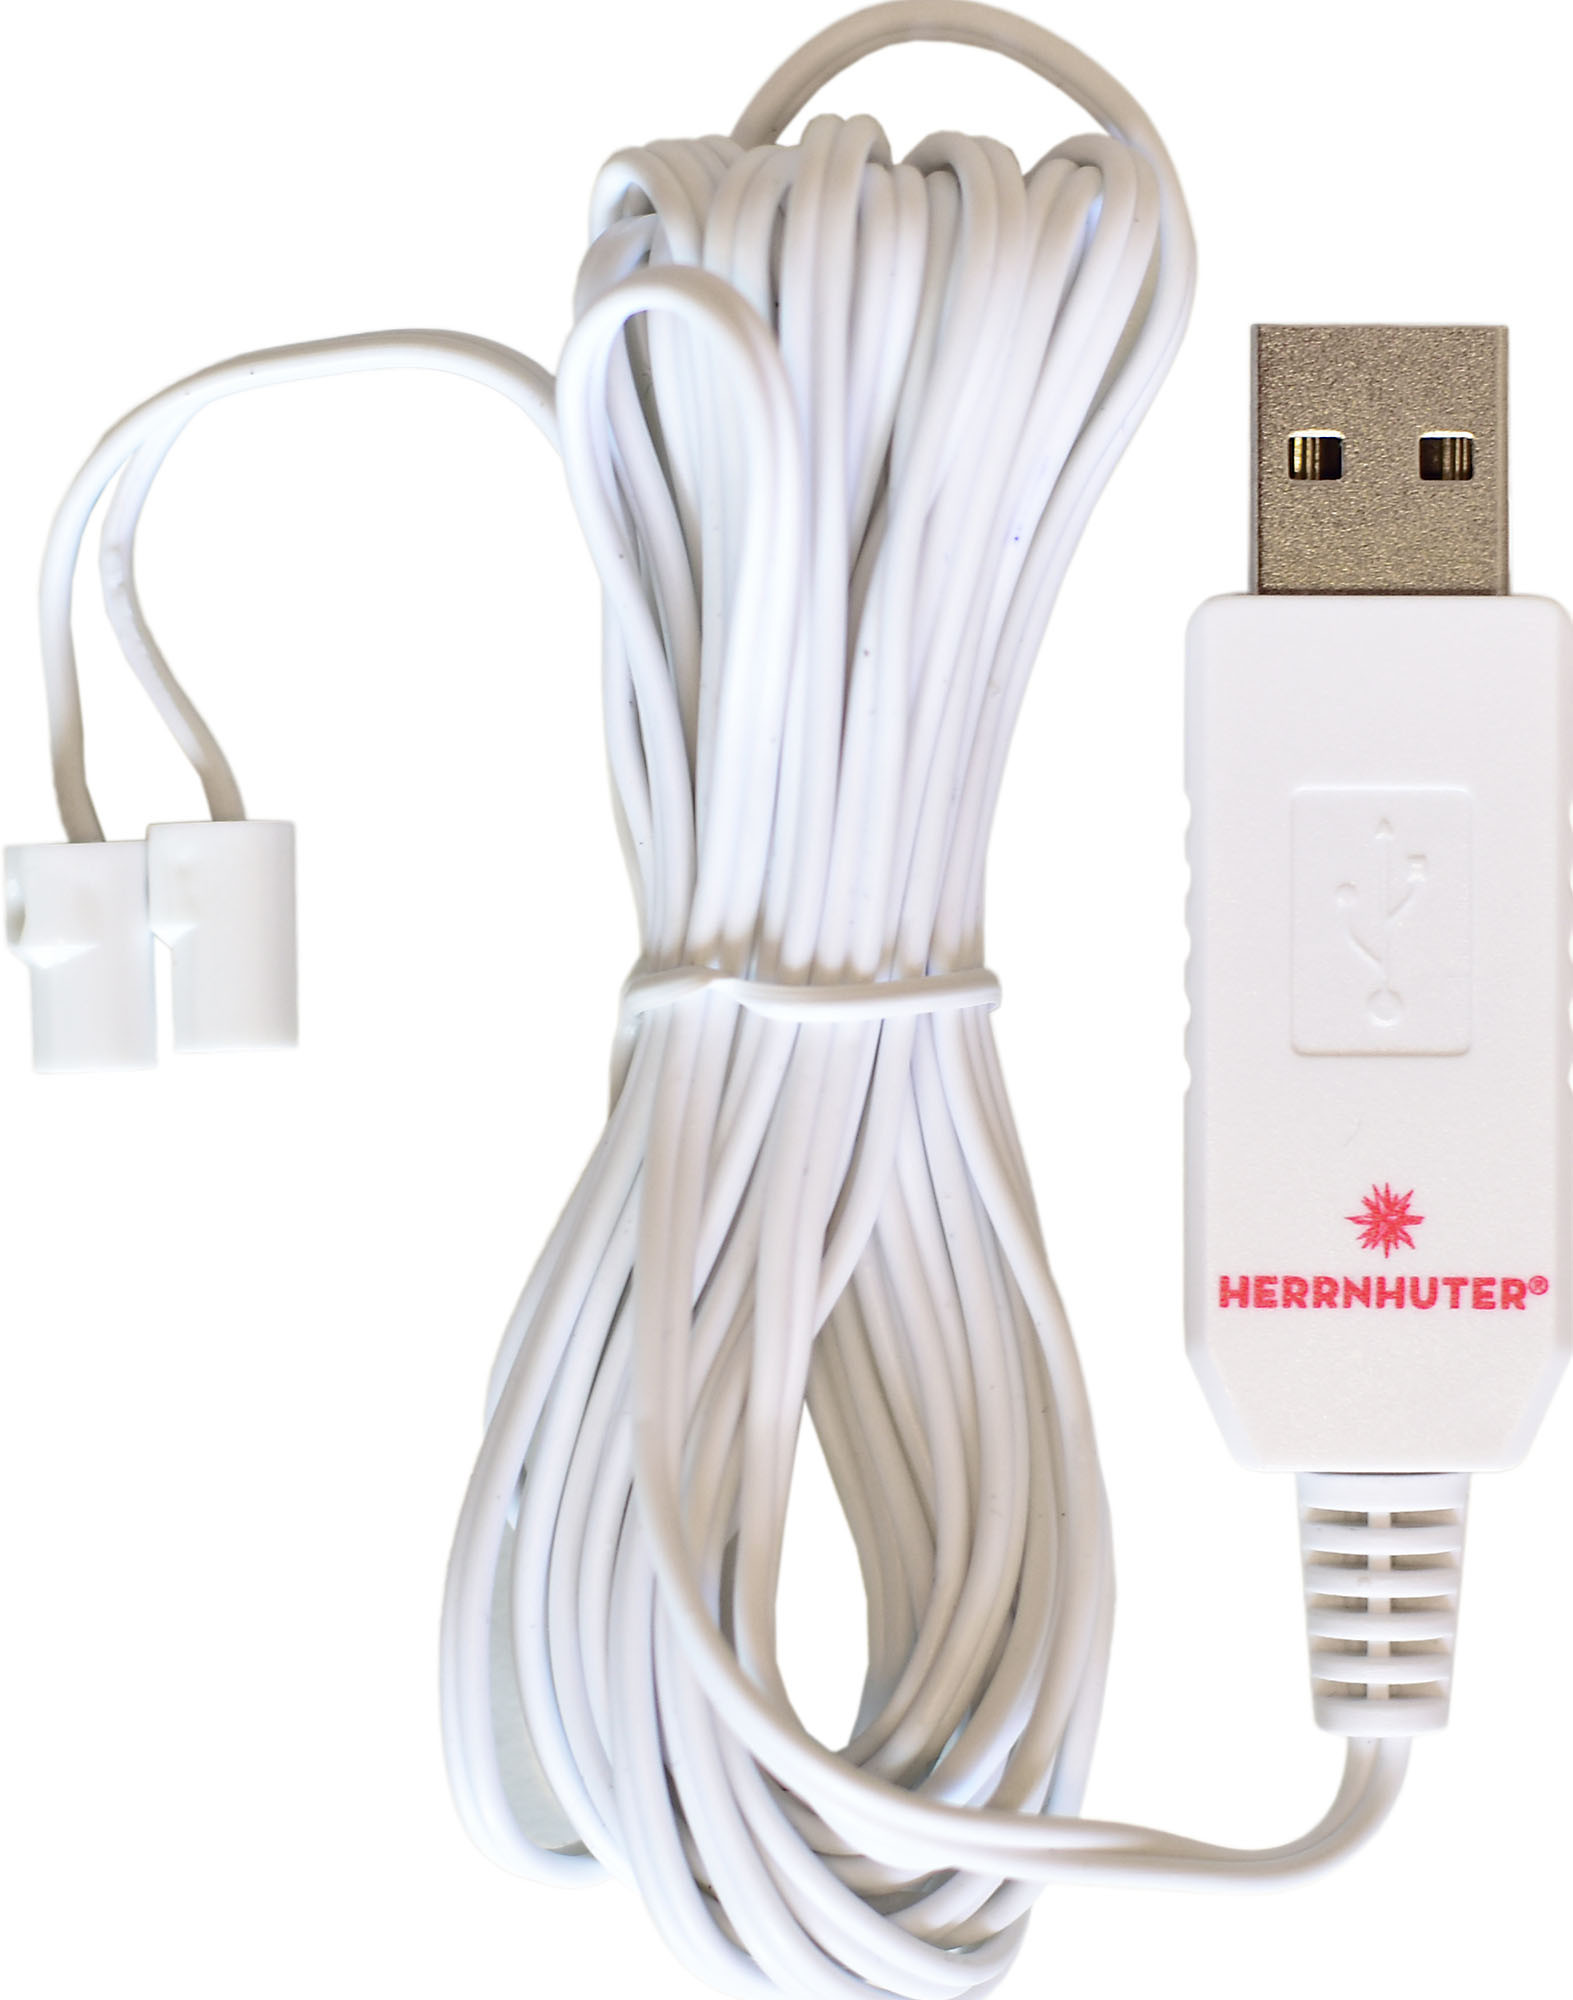 Herrnhuter USB-Adapter für Sterne A1e, A1b und Miniatursterne